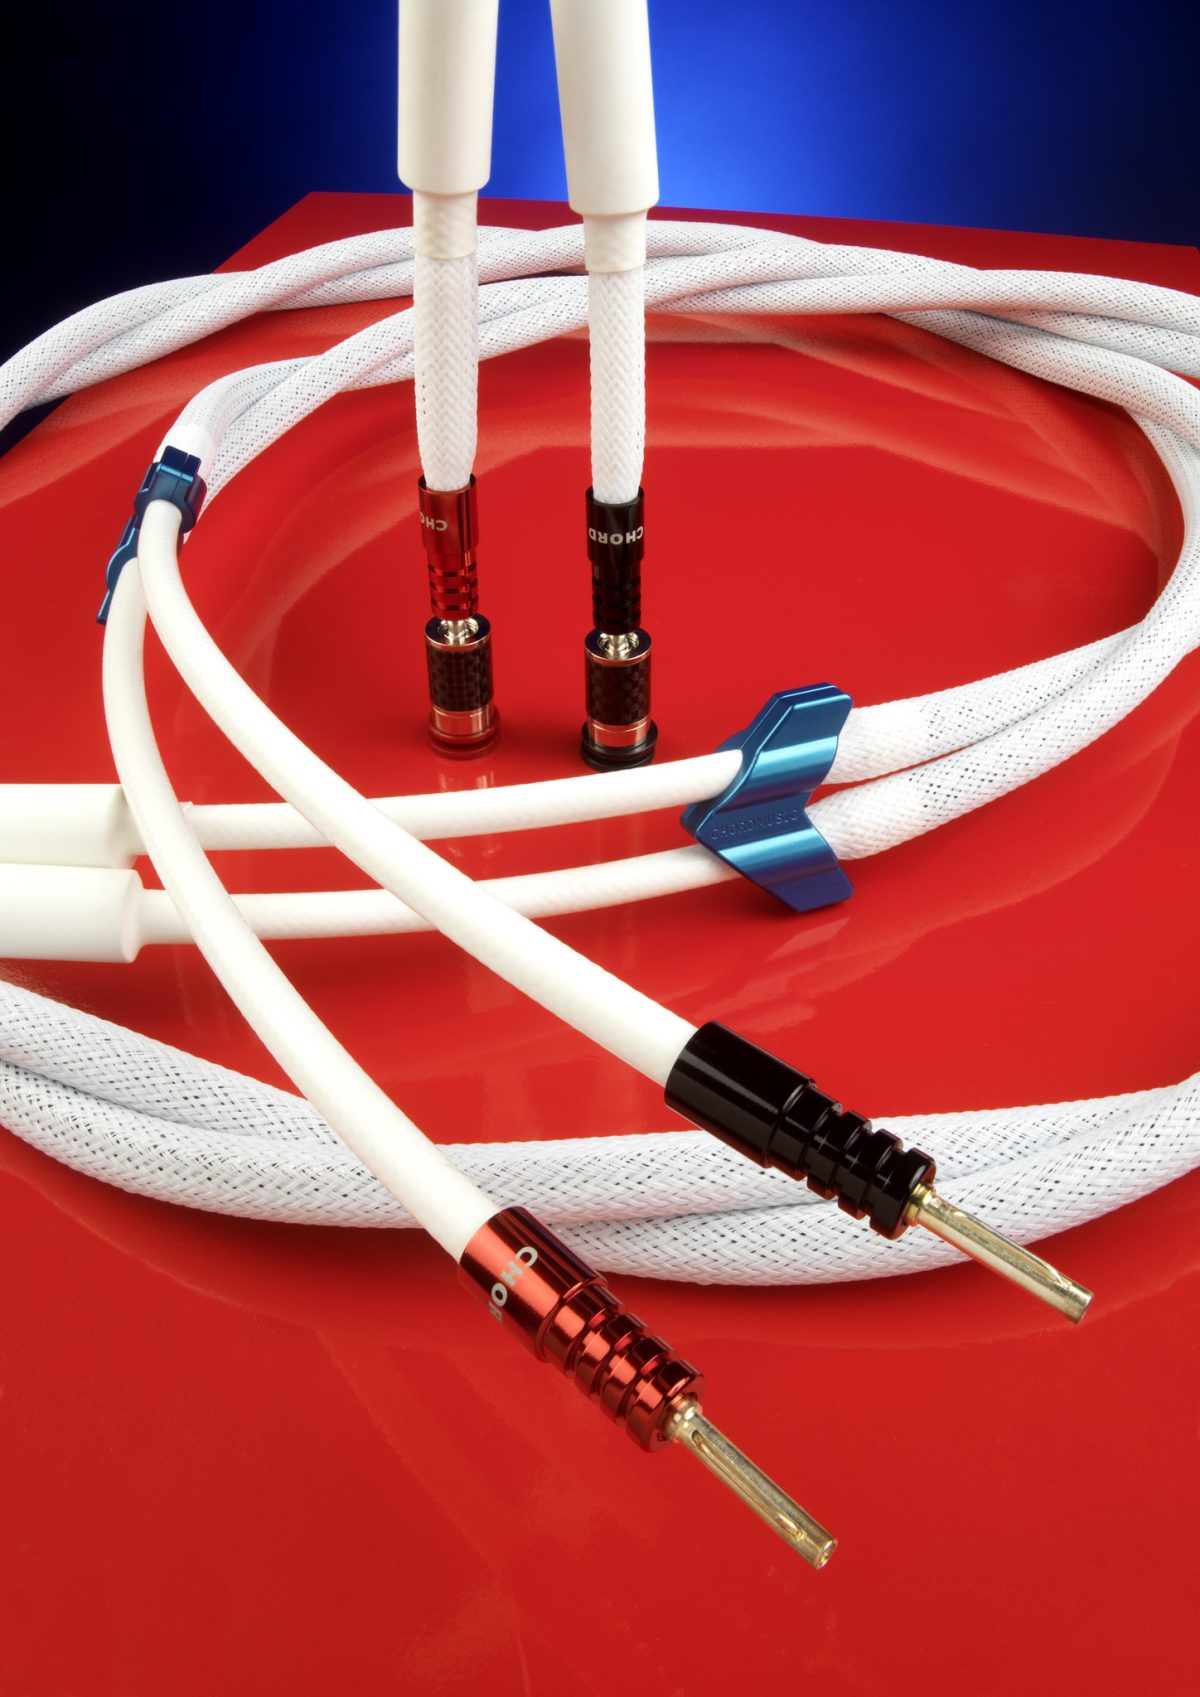 ChordMusic speaker cable